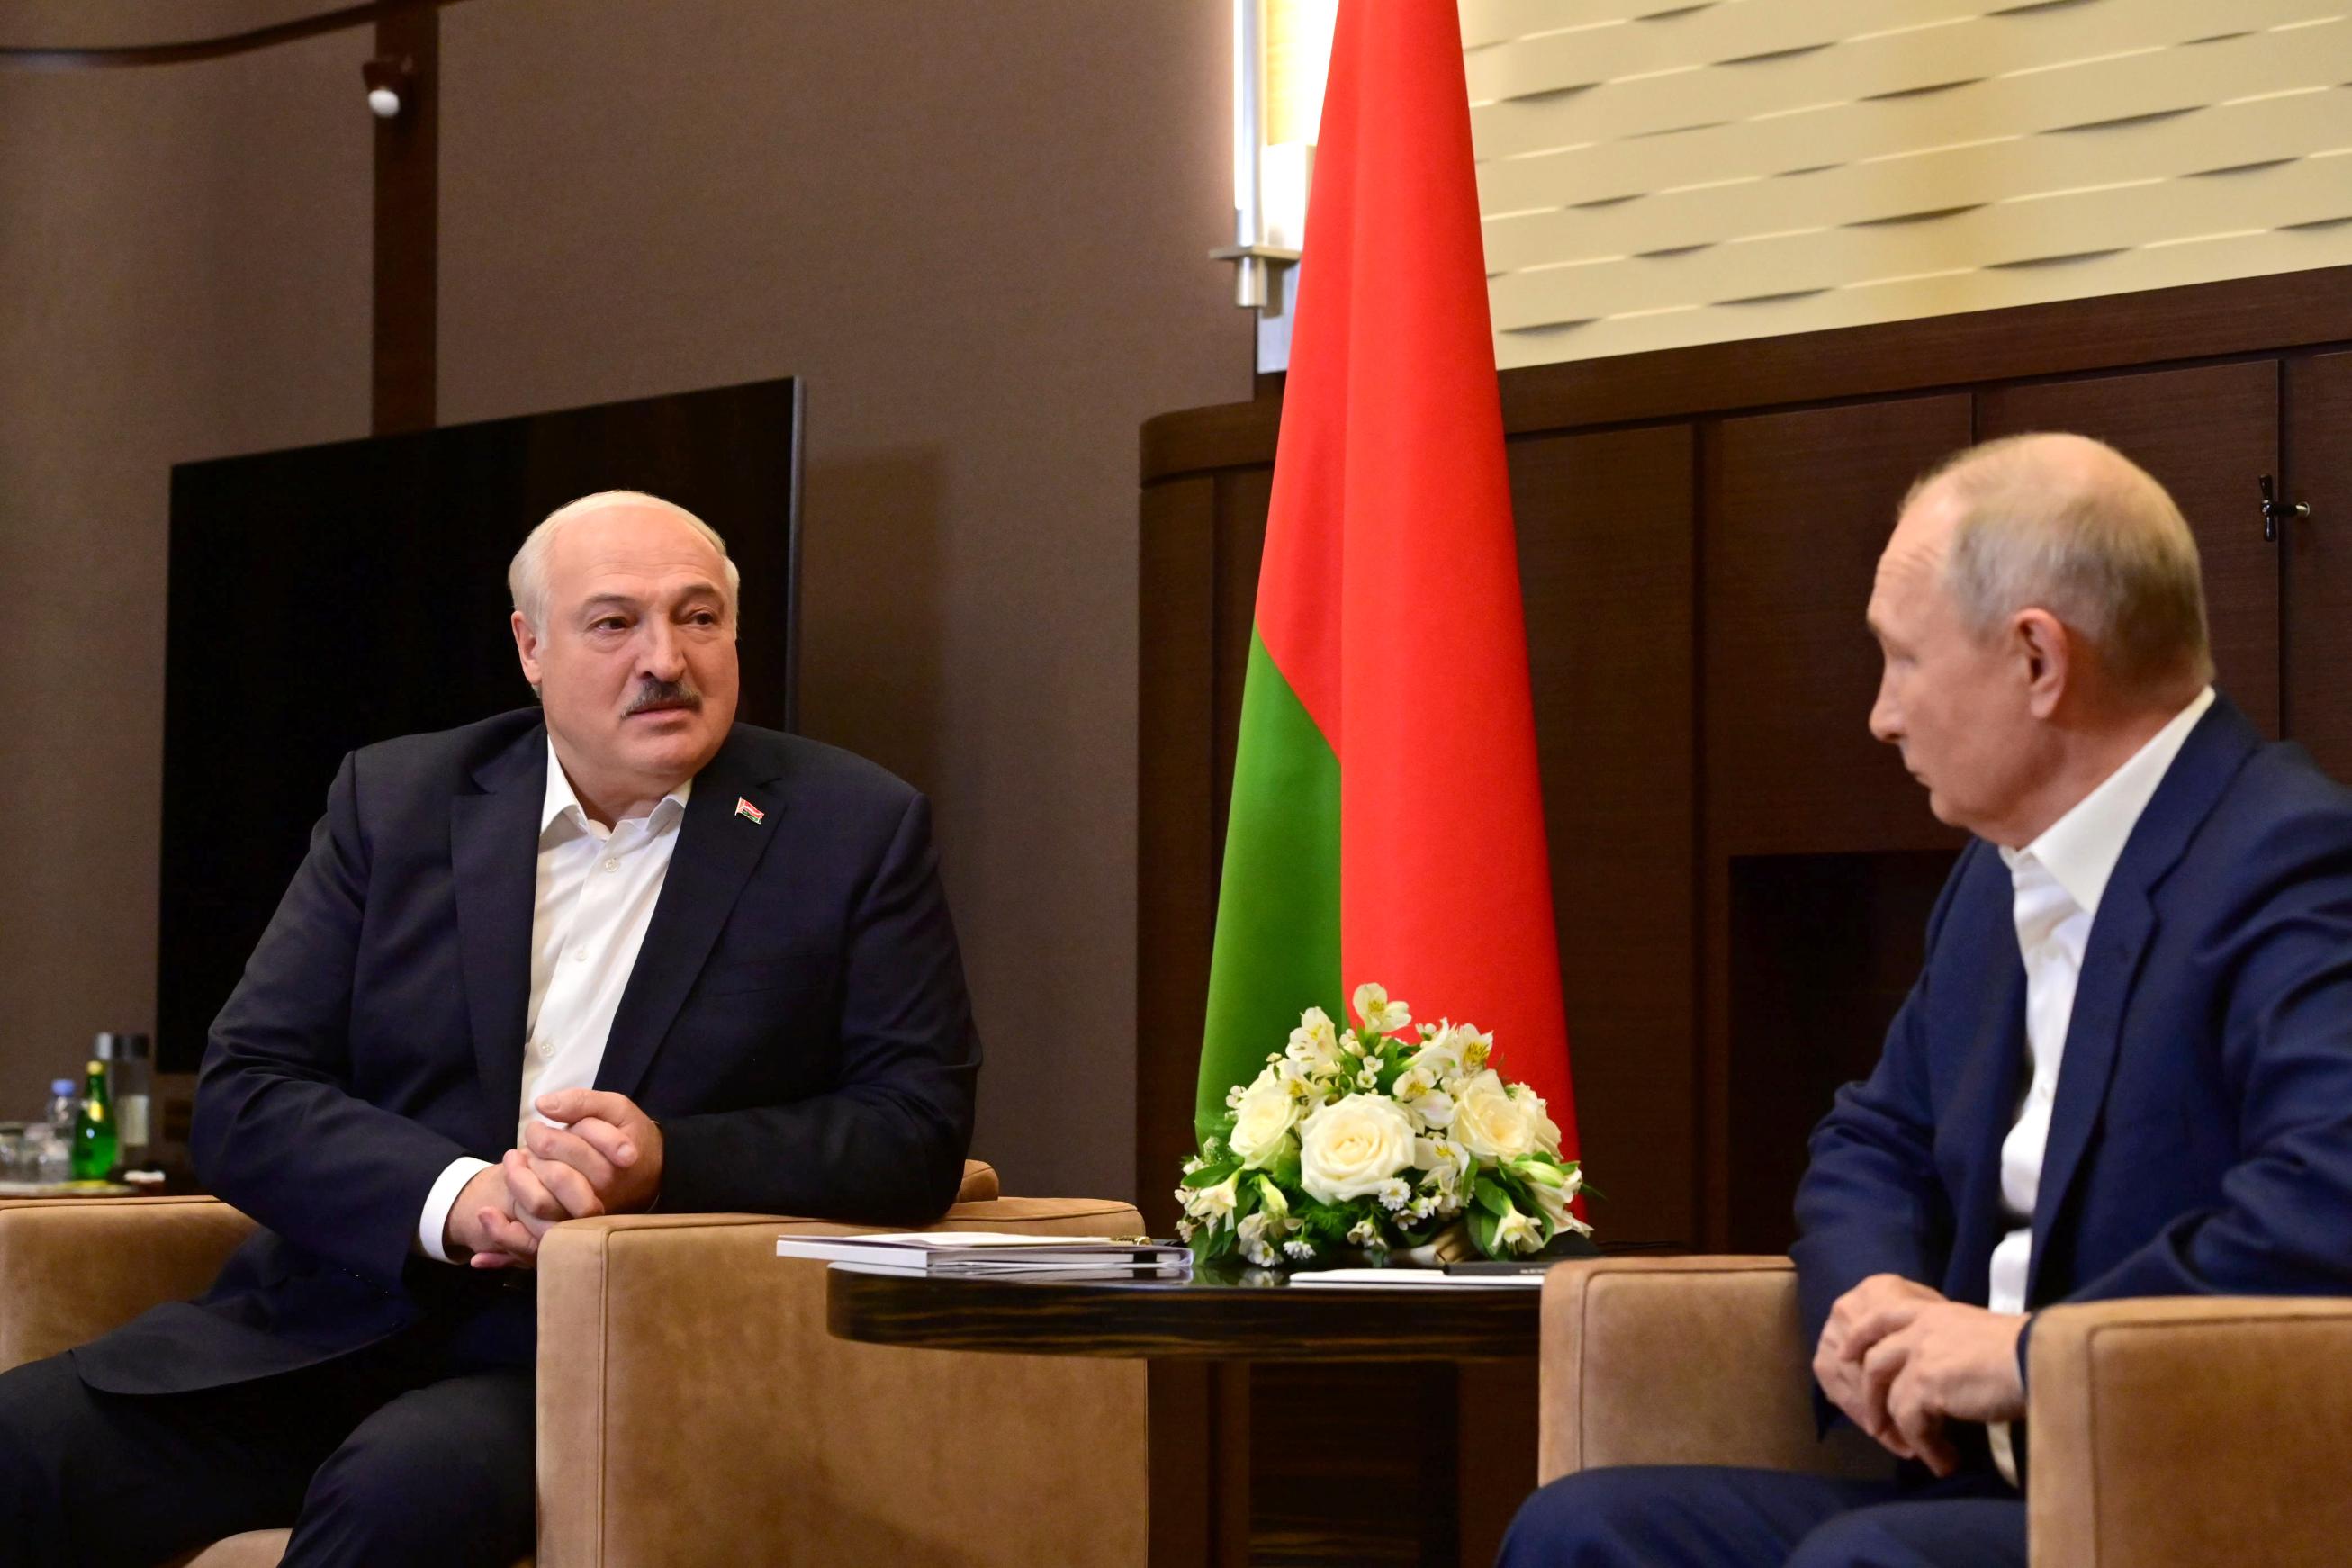 Александр Лукашенко о возможном взаимодействии России, Беларуси и КНДР: можем подумать и о сотрудничестве "на троих"